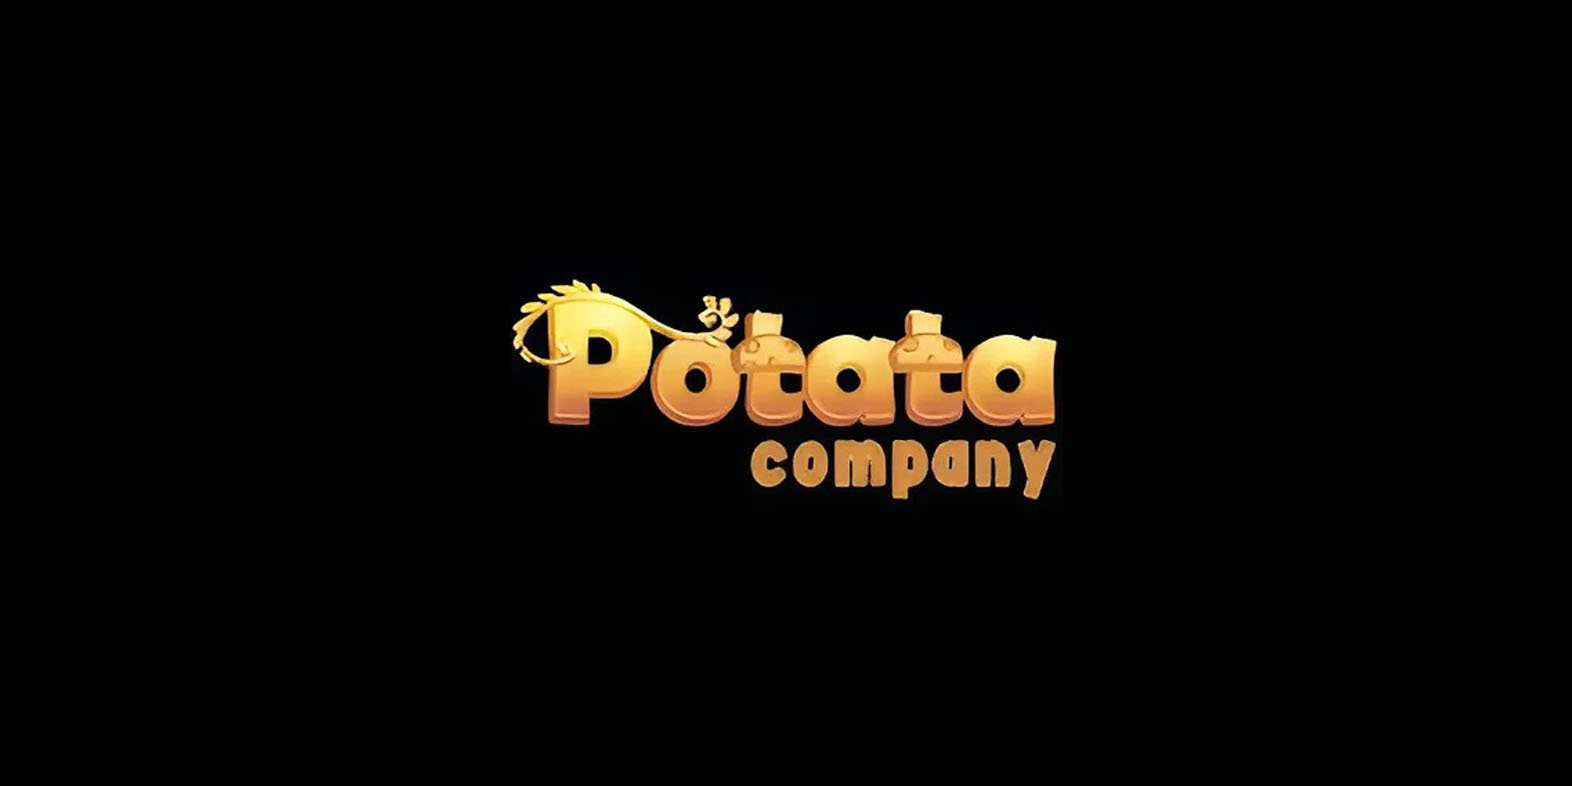 Potata Company